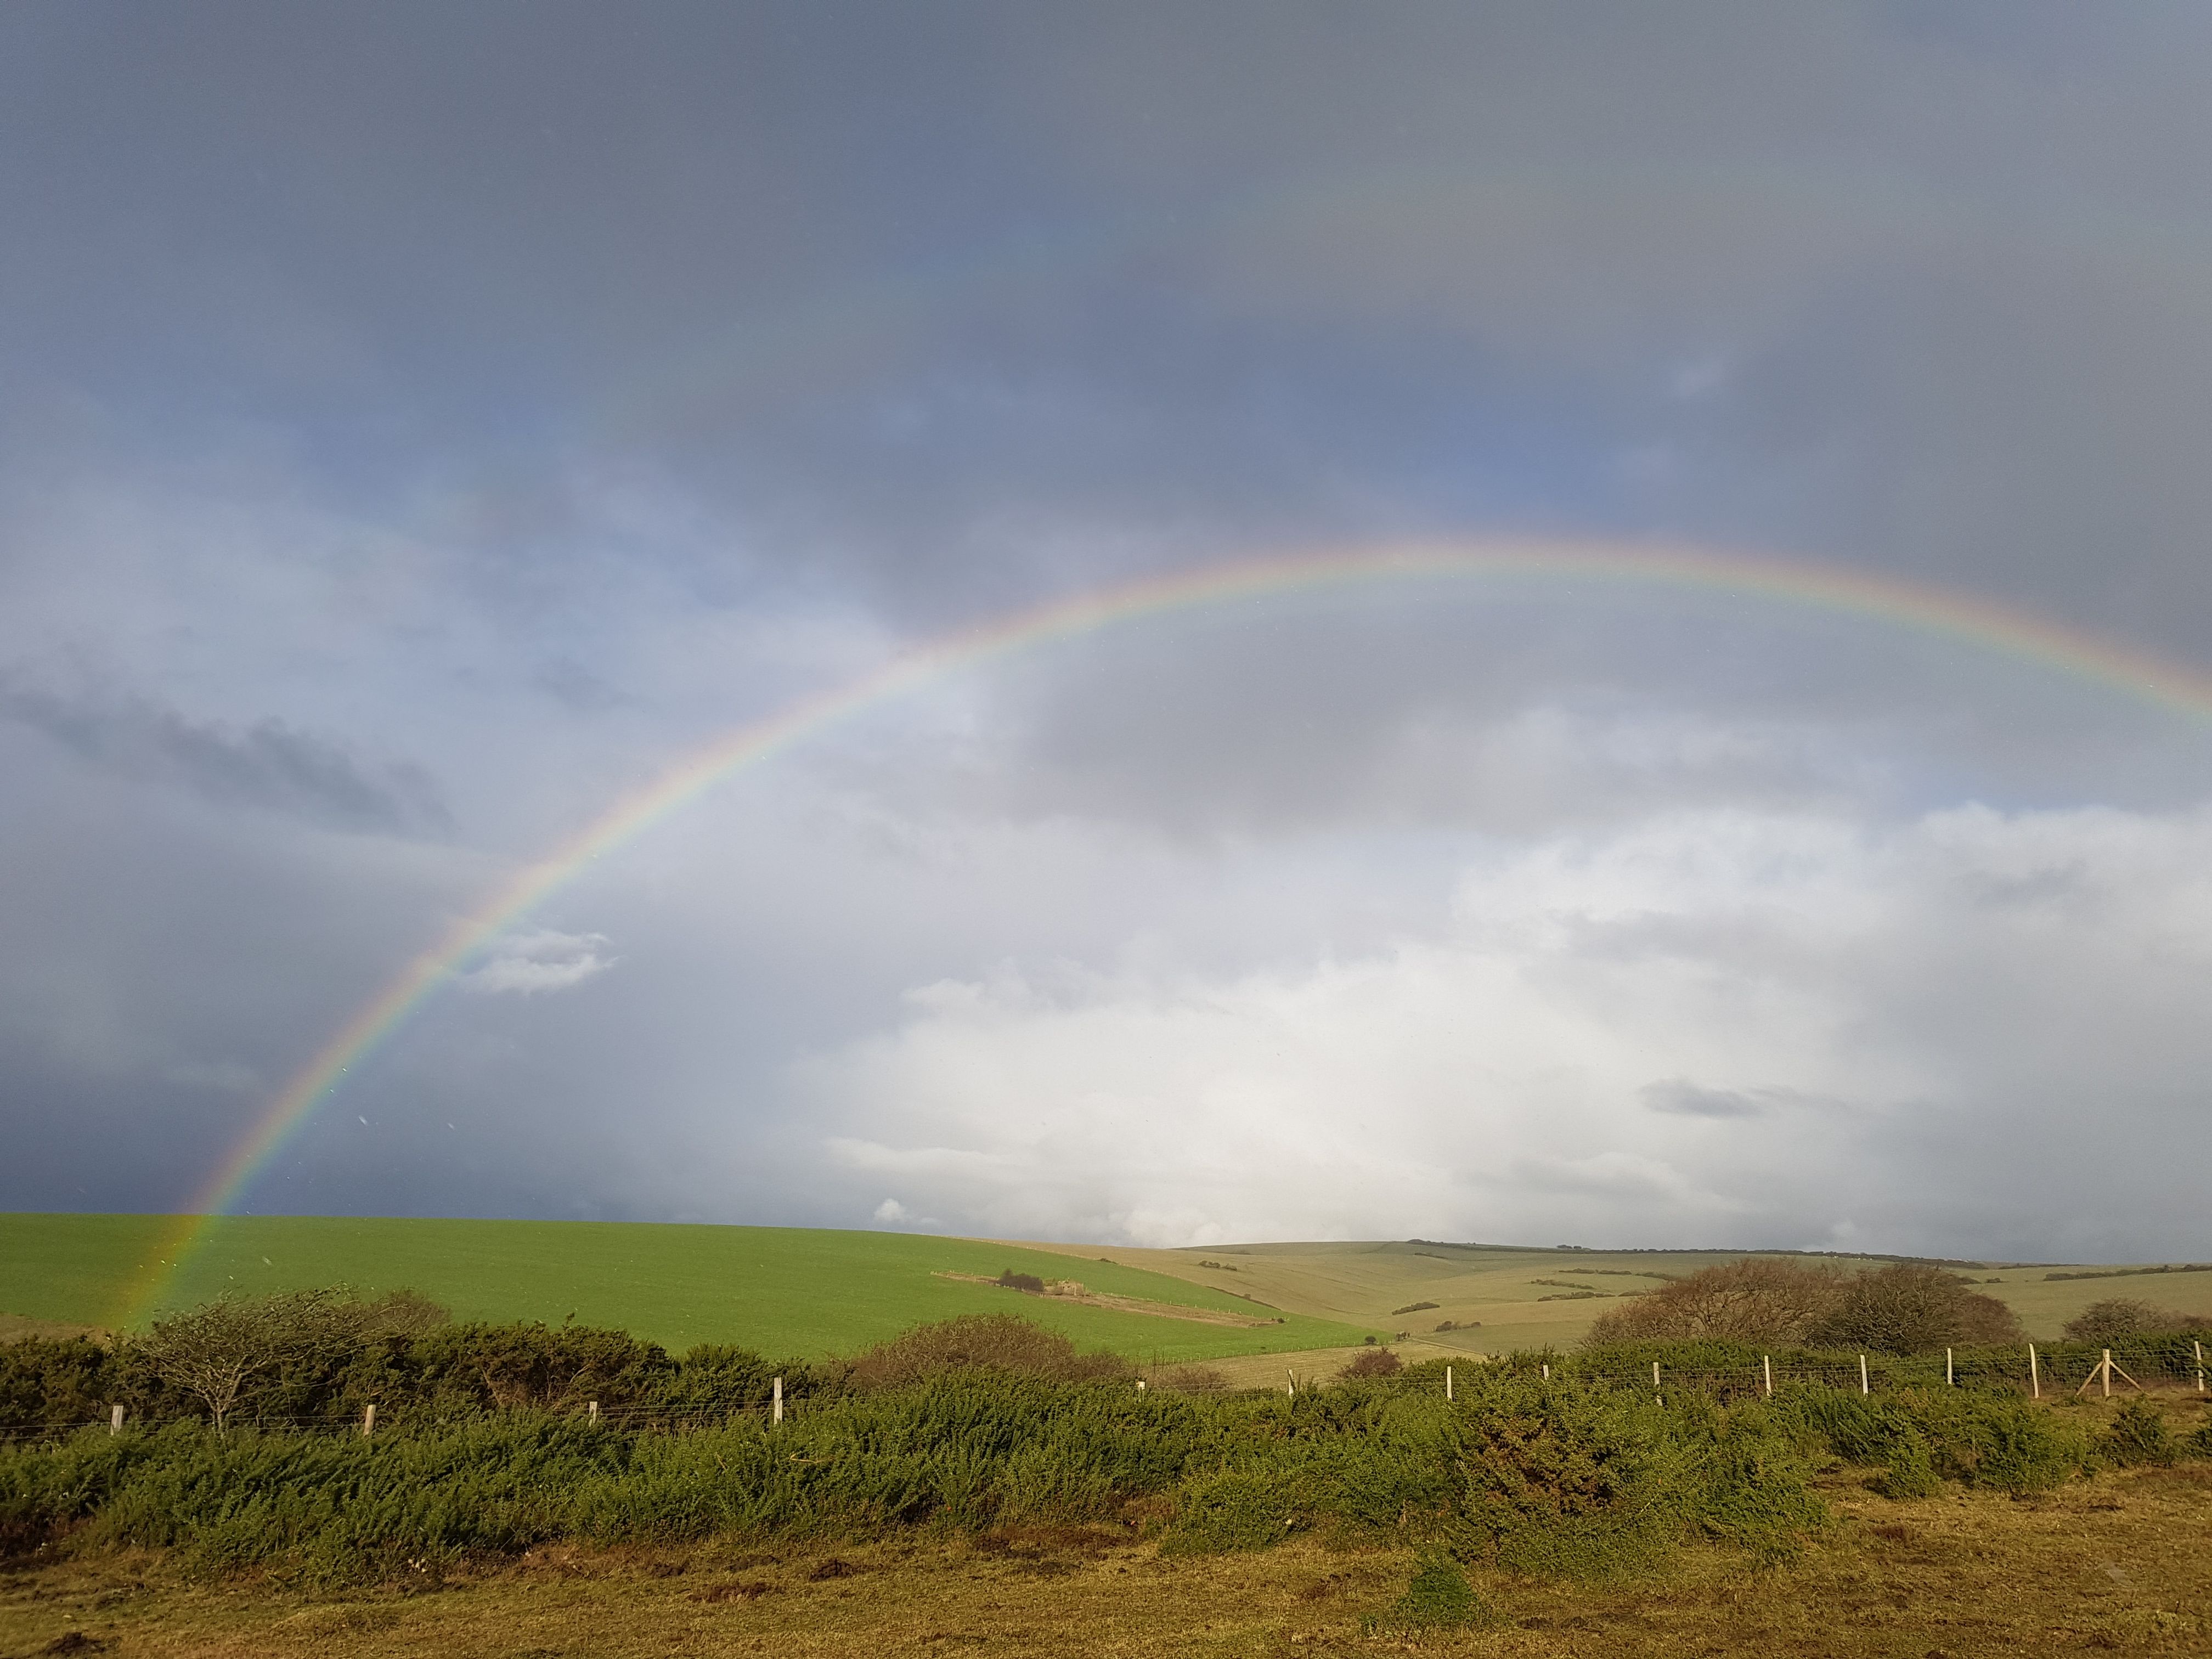 A rainbow over fields